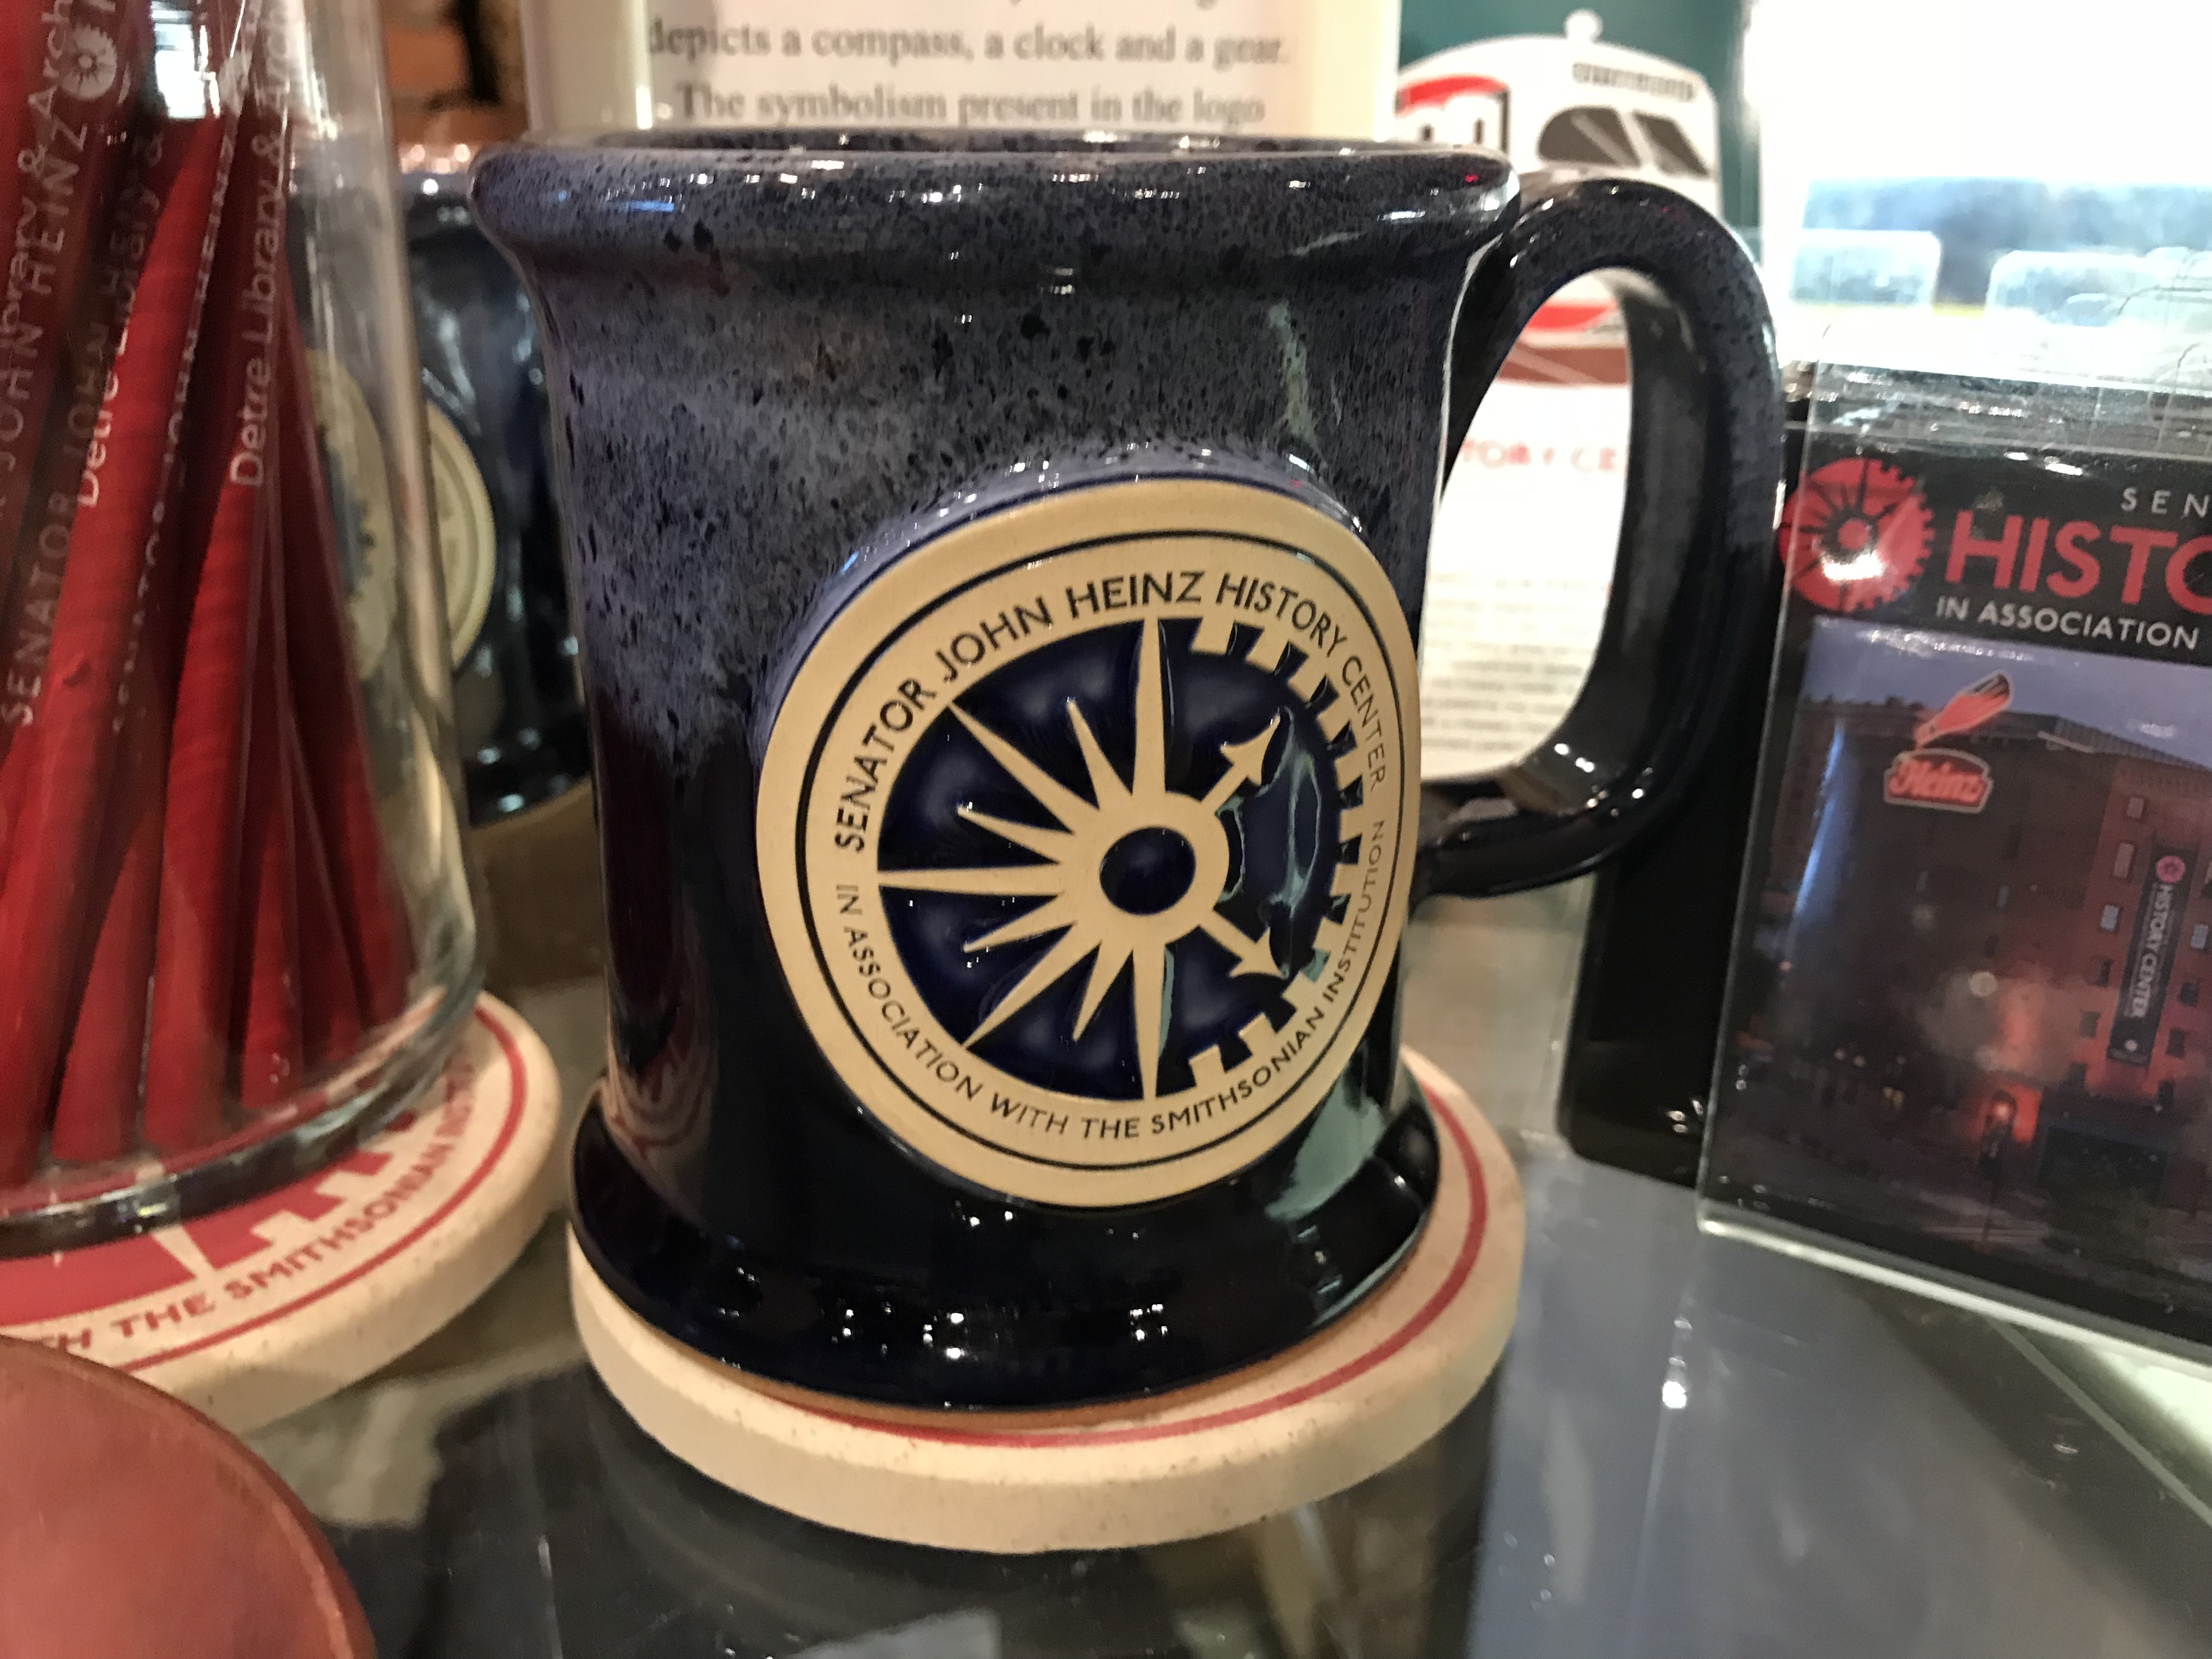 Heinz History Center Mug | History Center Museum Shop